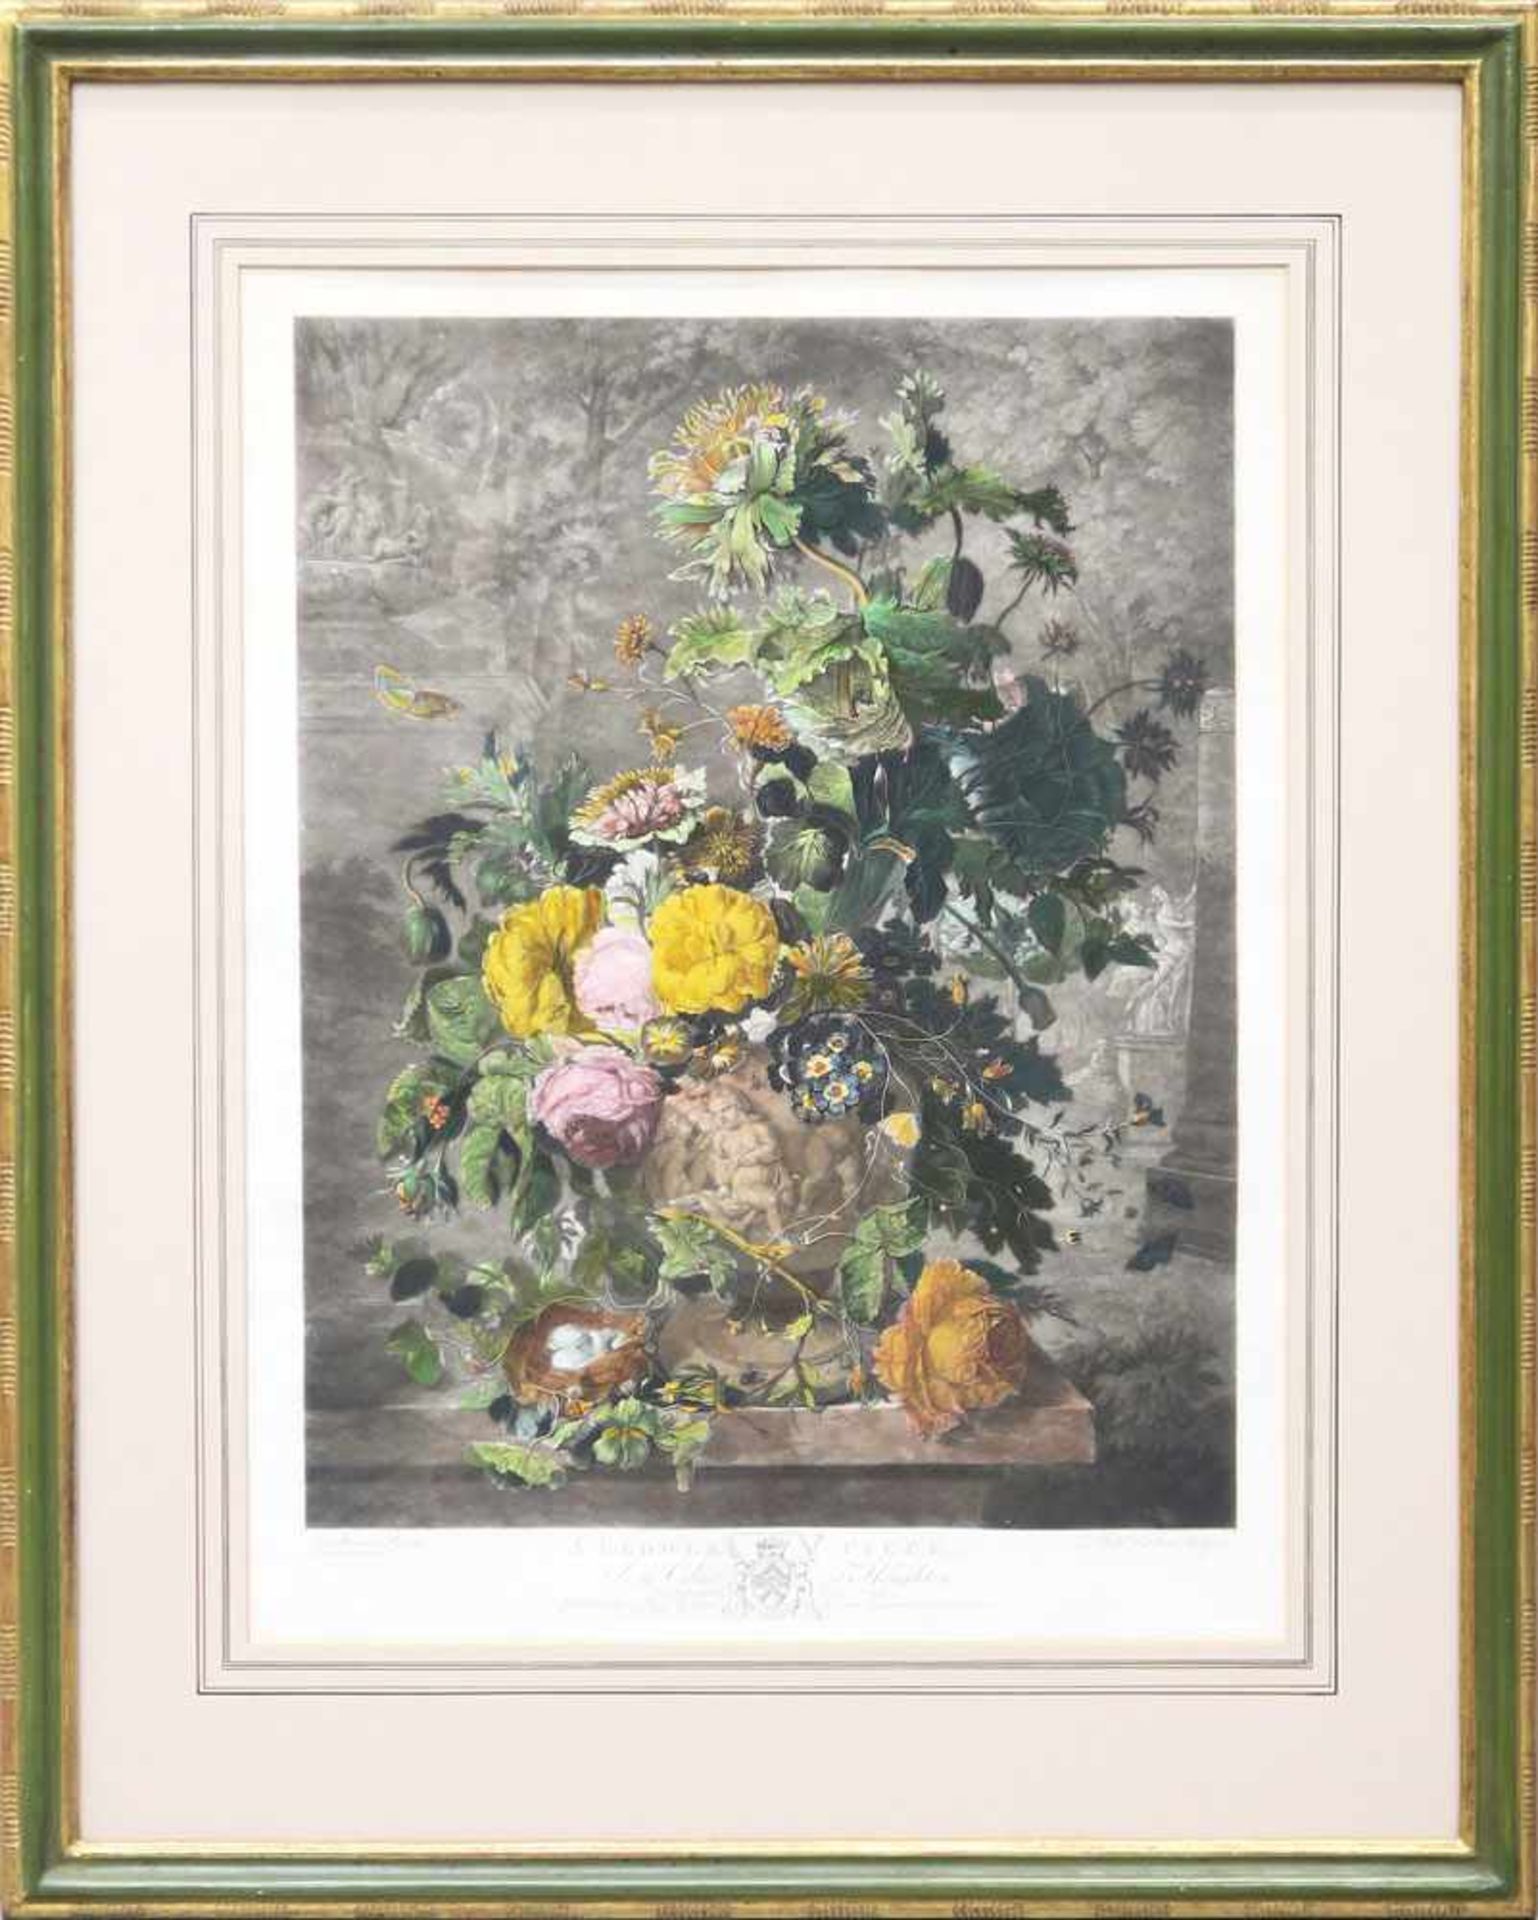 Earlom, Richard1743 London - 1822 ebd.A Flower PieceKoloriertes Mezzotinto nach Jan van Huysum BA: